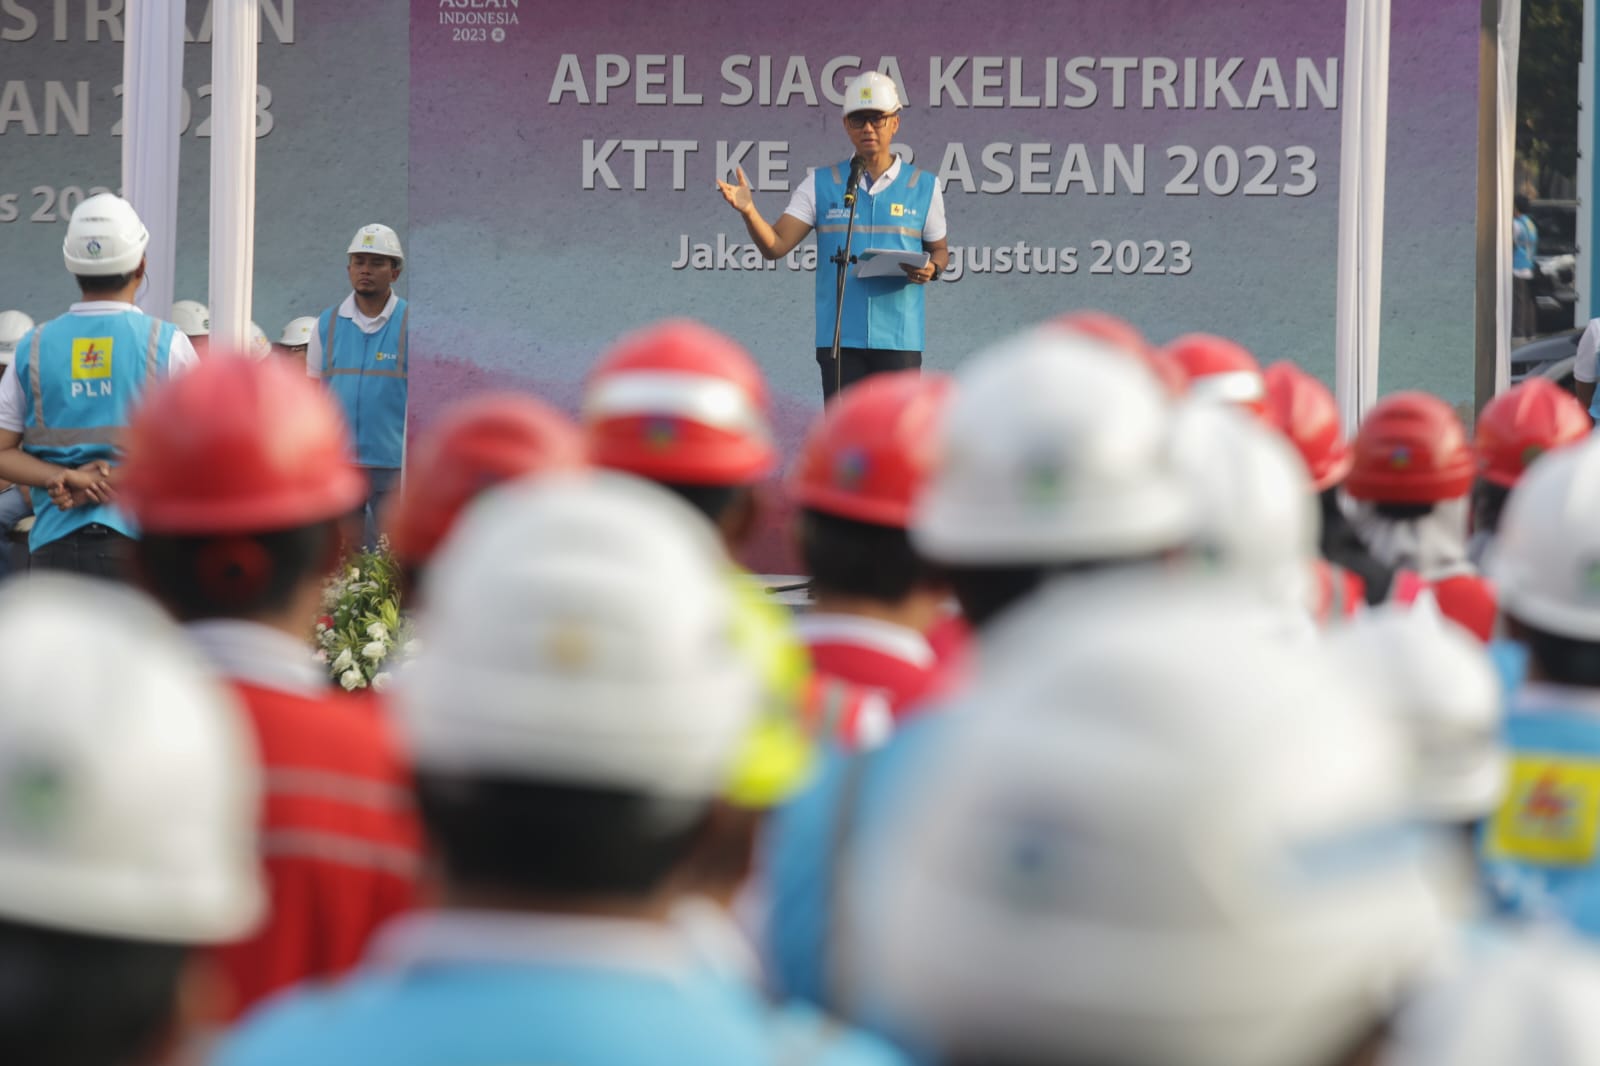 Direktur Utama PLN, Darmawan Prasodjo saat memberikan arahan kepada personel PLN saat Apel Siaga Kelistrikan KTT Ke-43 ASEAN di Jakarta, Kamis (31/8). (Foto: Istimewa) 